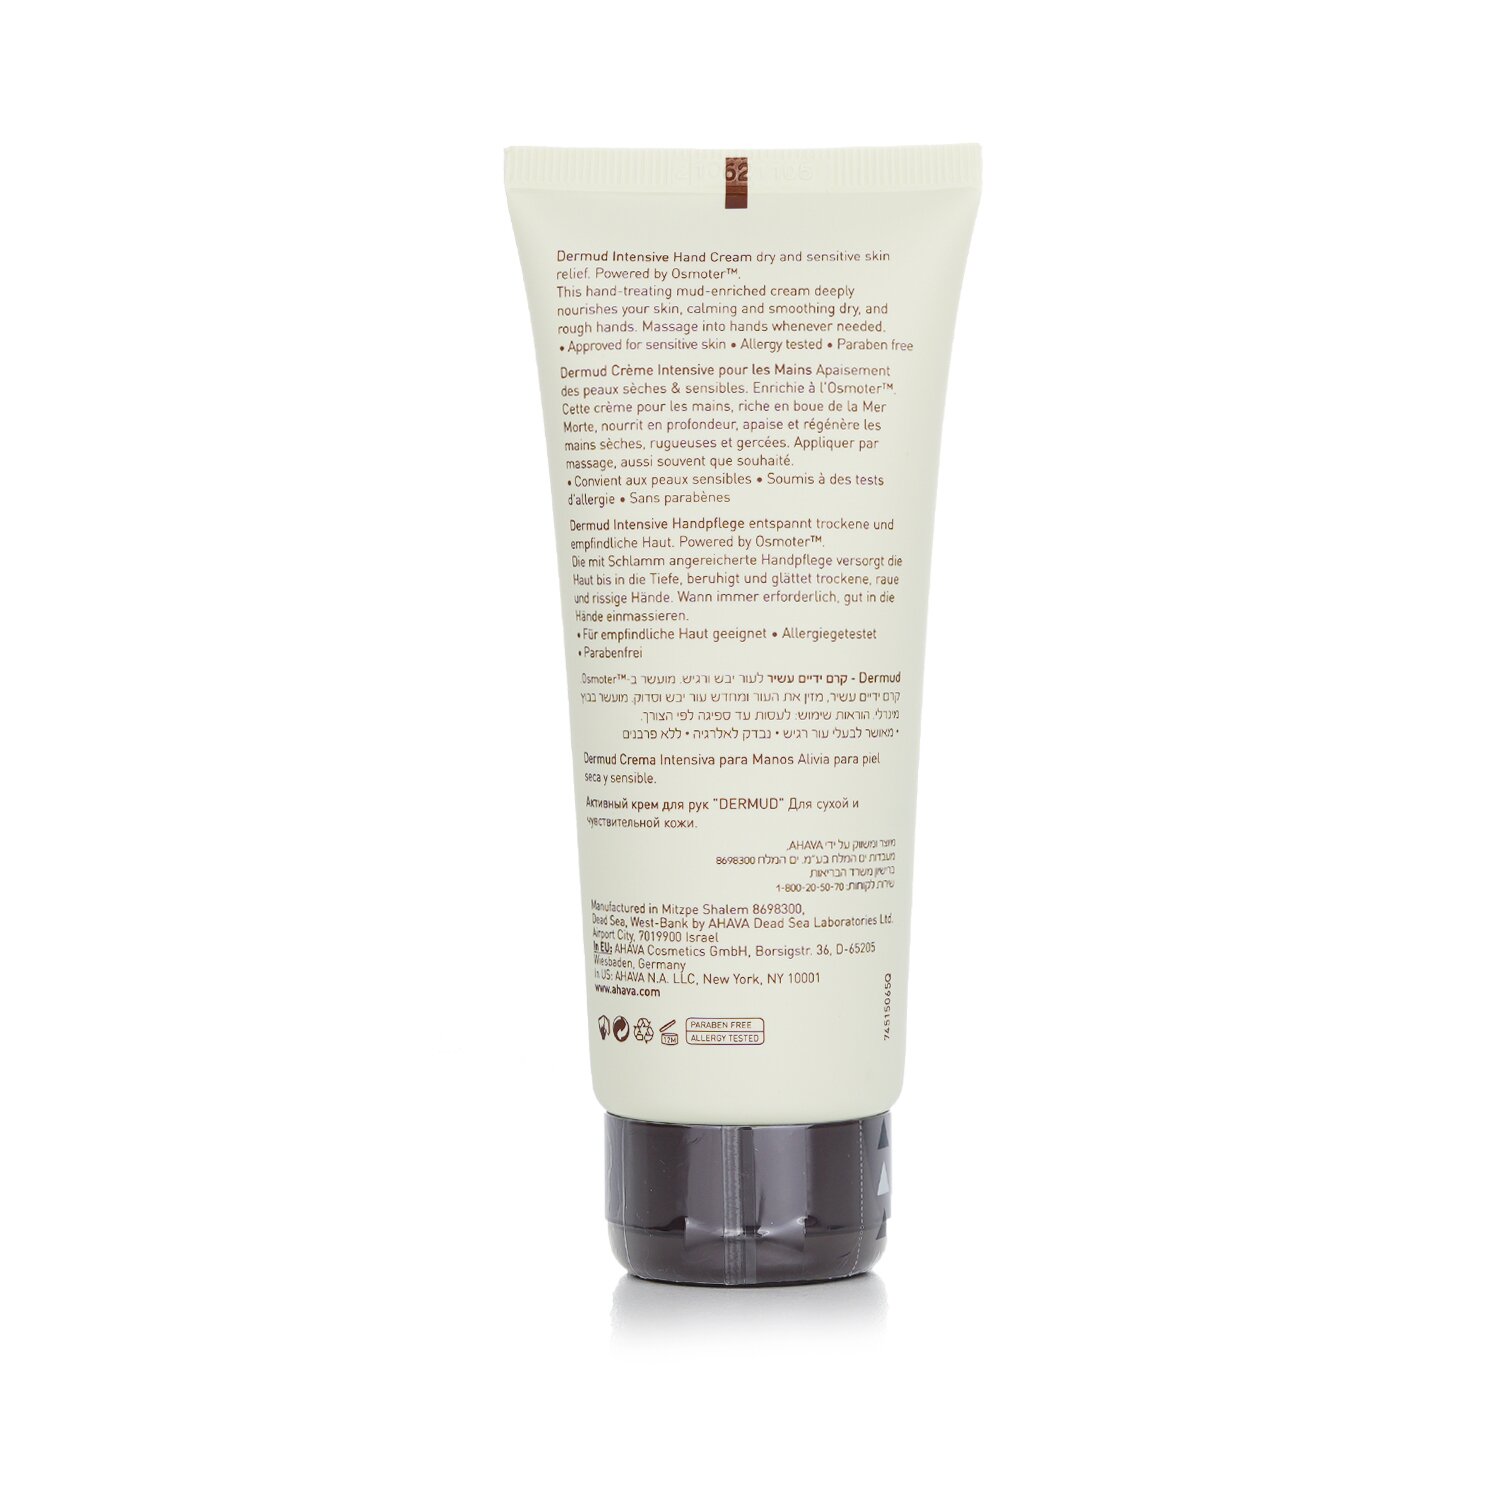 Ahava Leave-On Deadsea Mud Dermud Intensive Hand Cream 100ml/3.4oz